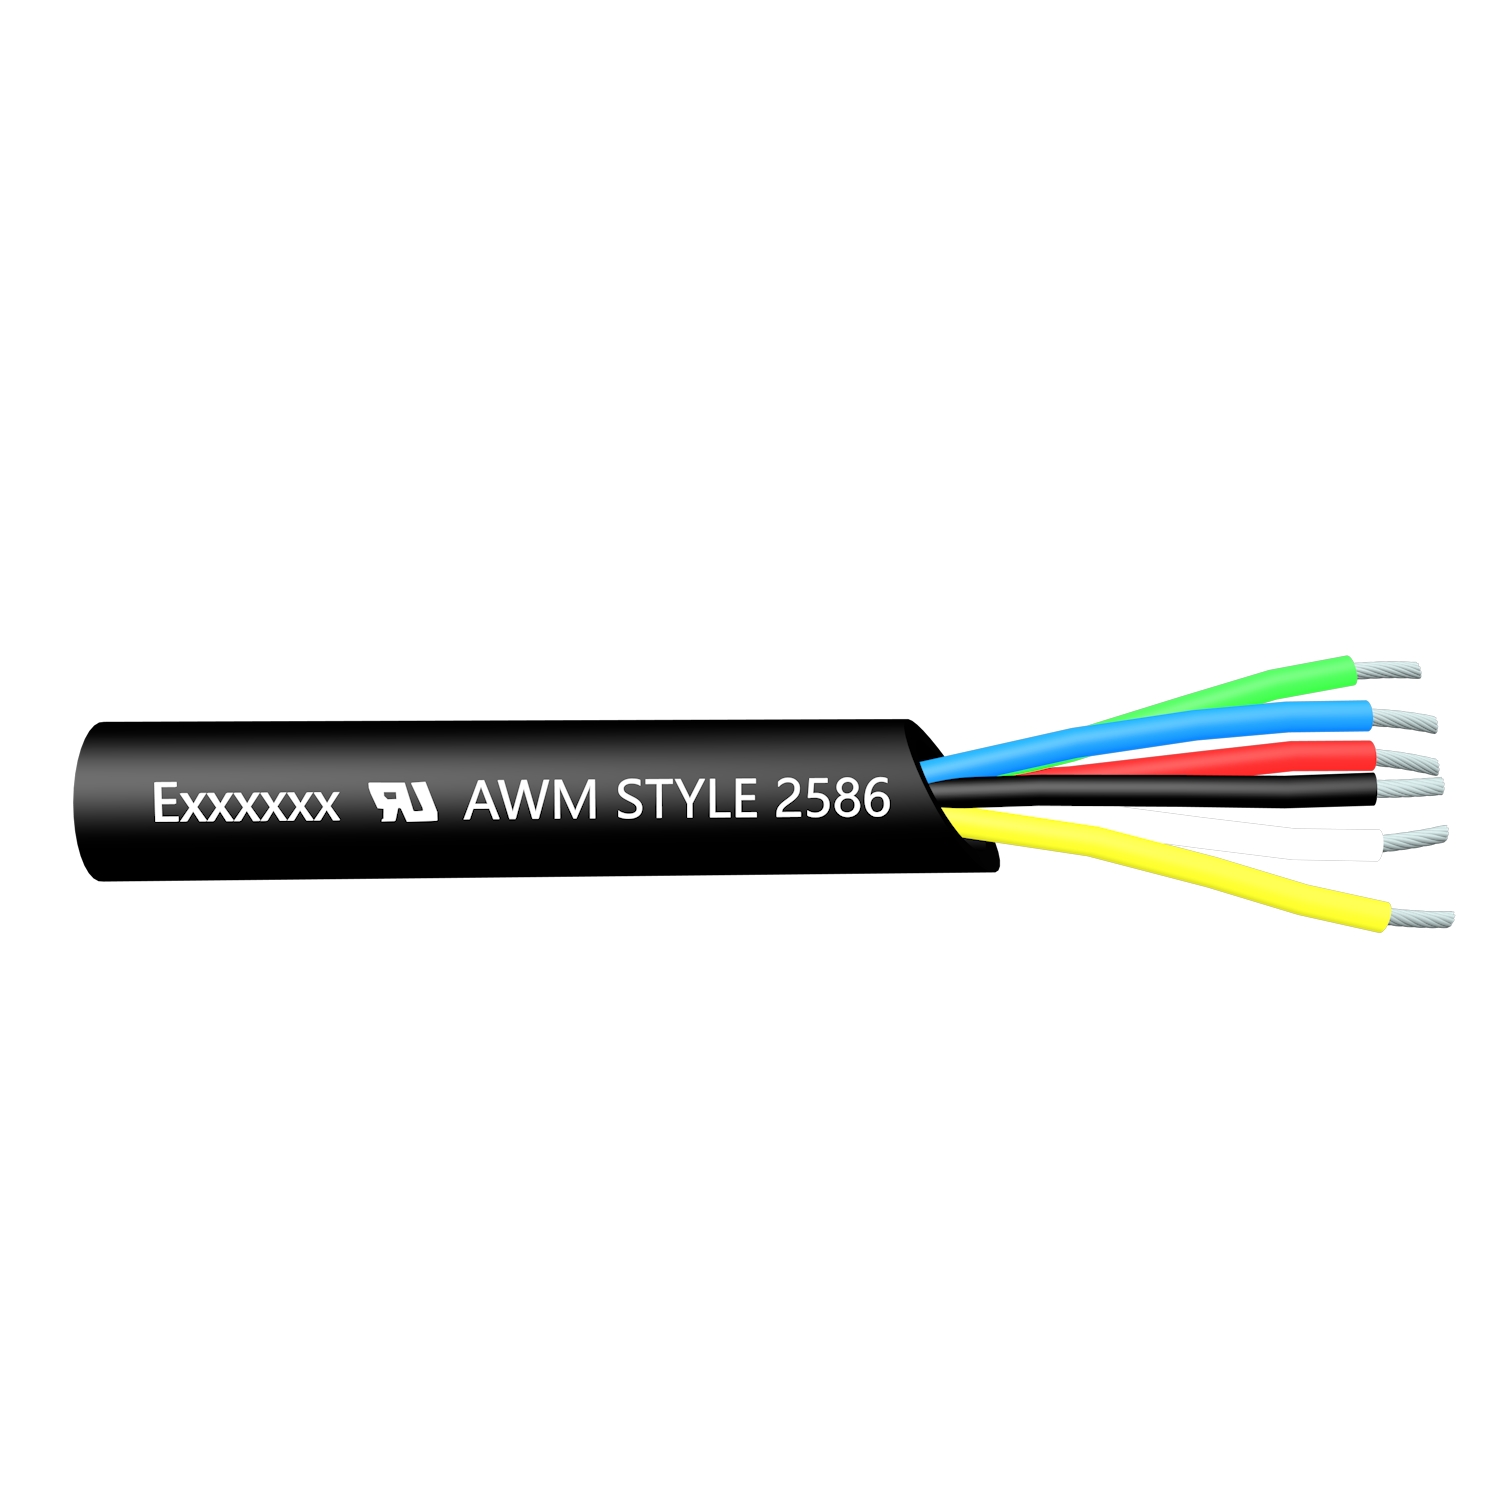 UL AWM 2586 Cabo de Força PVC Fio de Cobre Flexível Resistente a UV